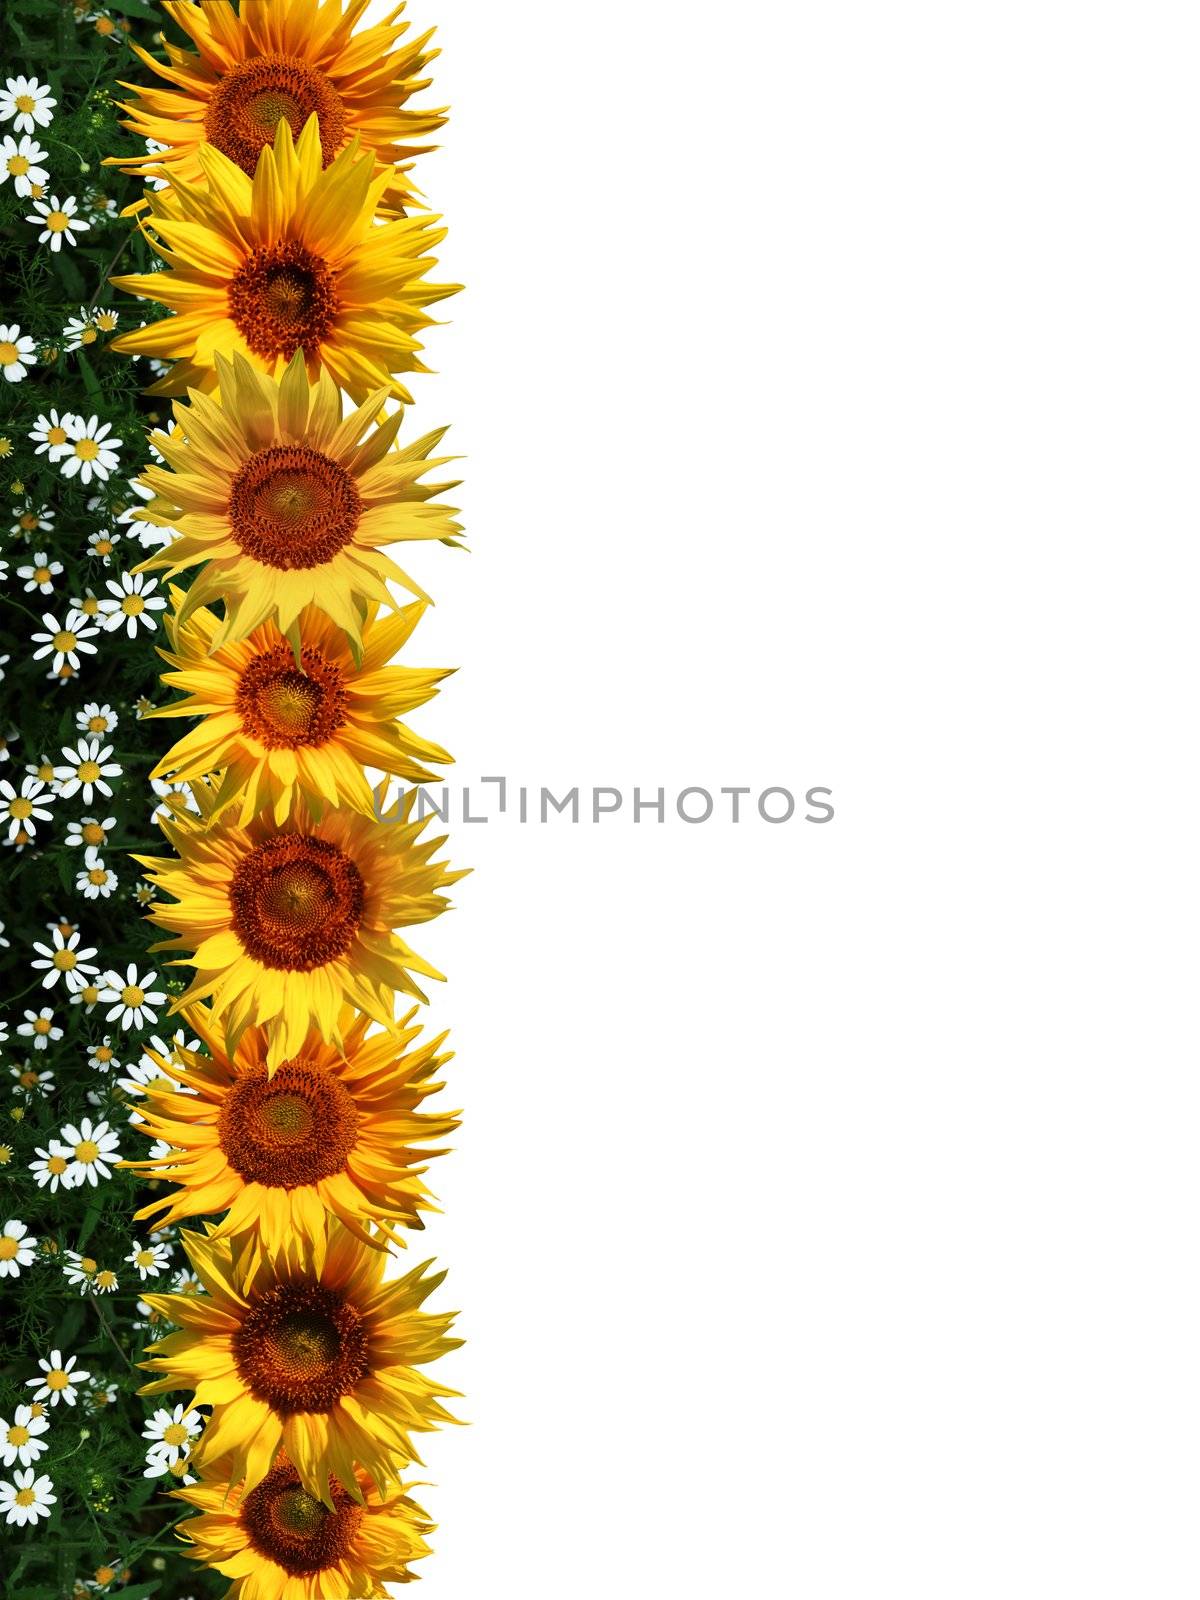 Line of sunflowers by velkol